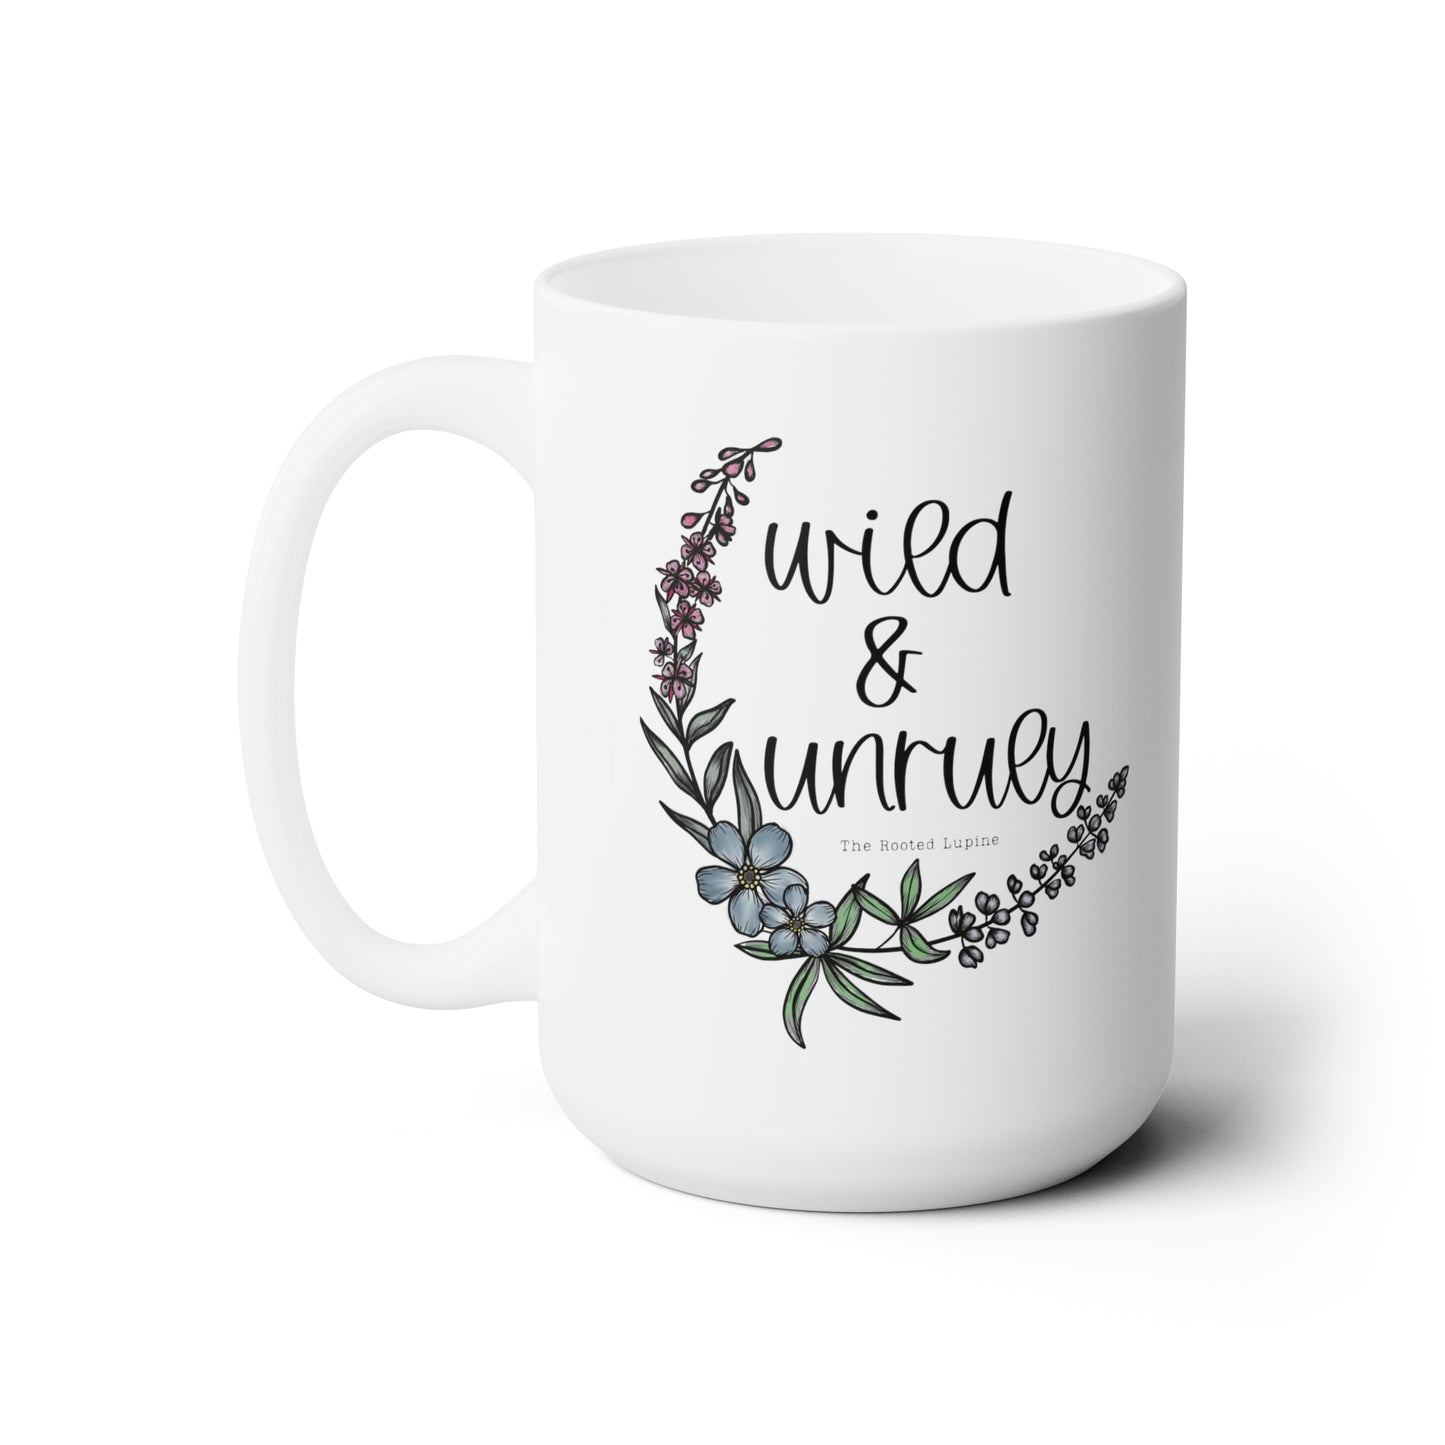 wild and unruly mug